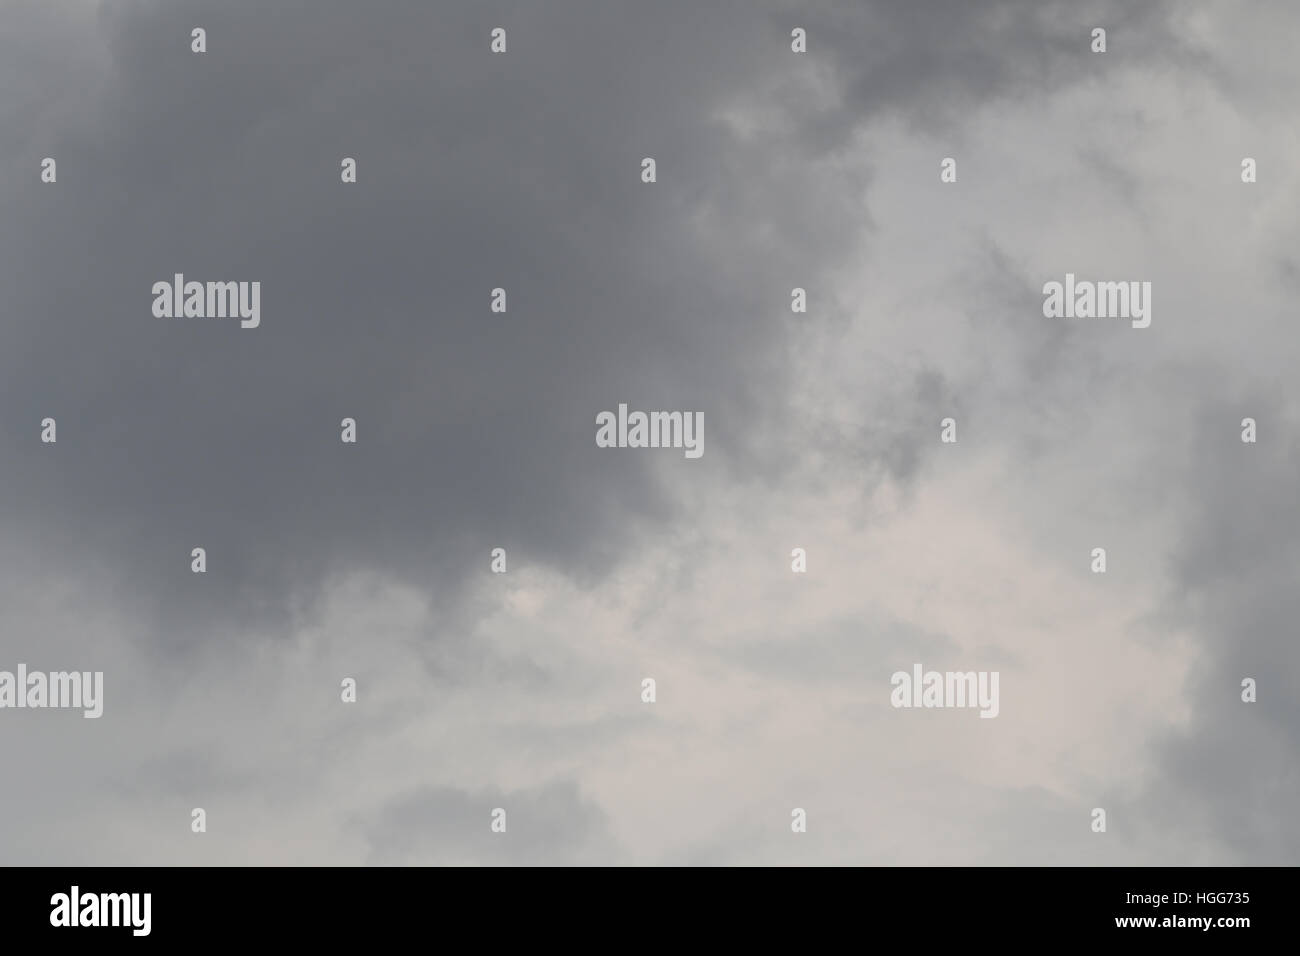 Las nubes de lluvia que se forman en el cielo en concepto del clima,el mal tiempo en el día. Foto de stock